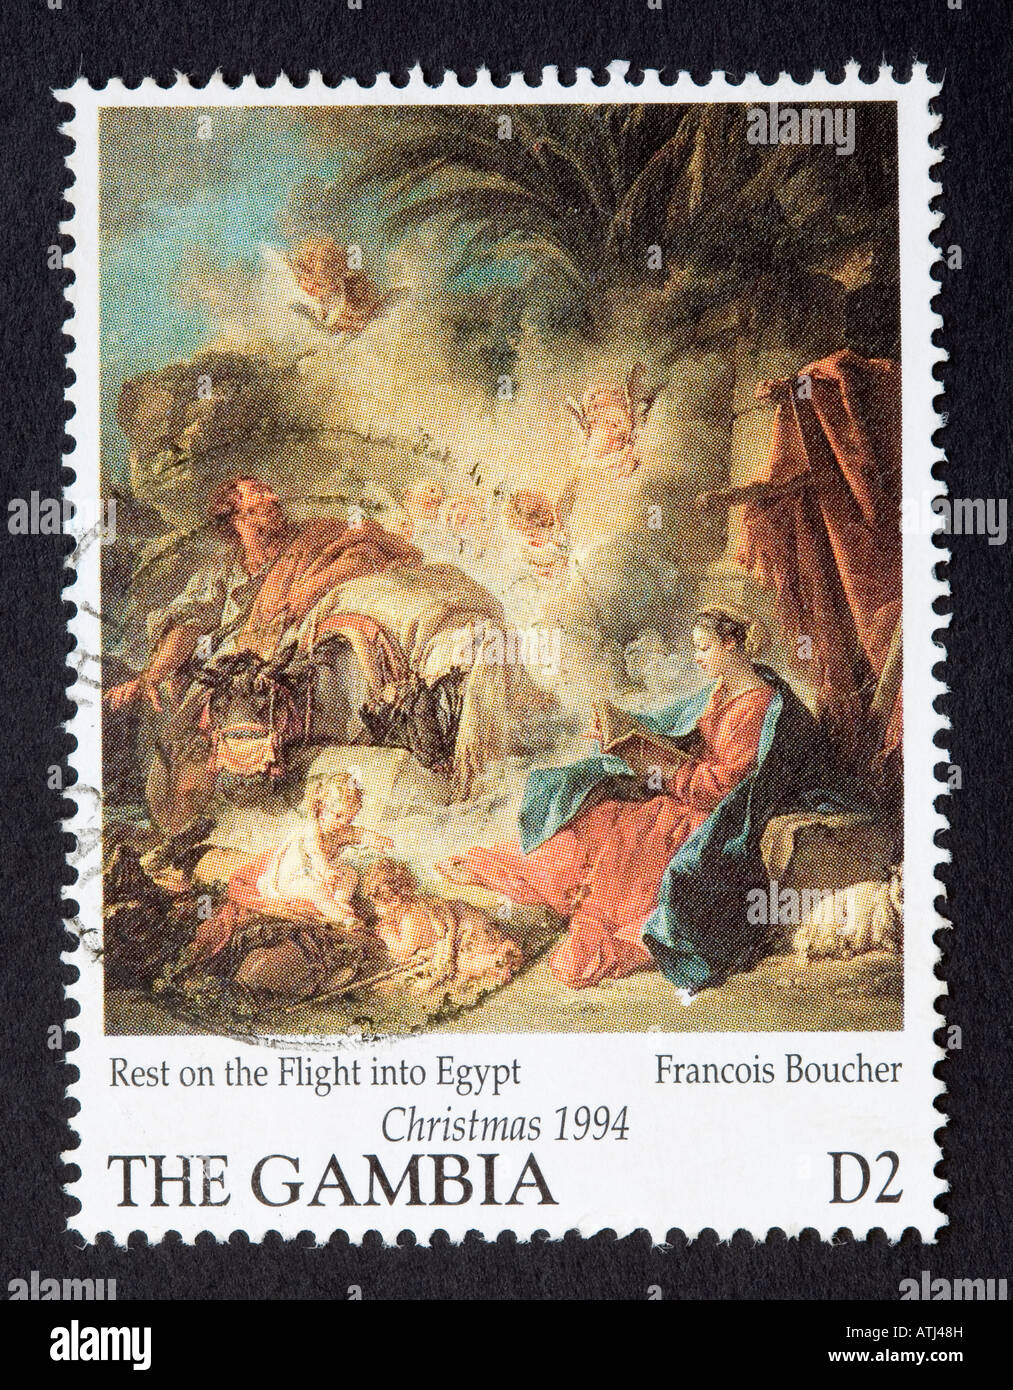 Gambia-Briefmarke Stockfoto